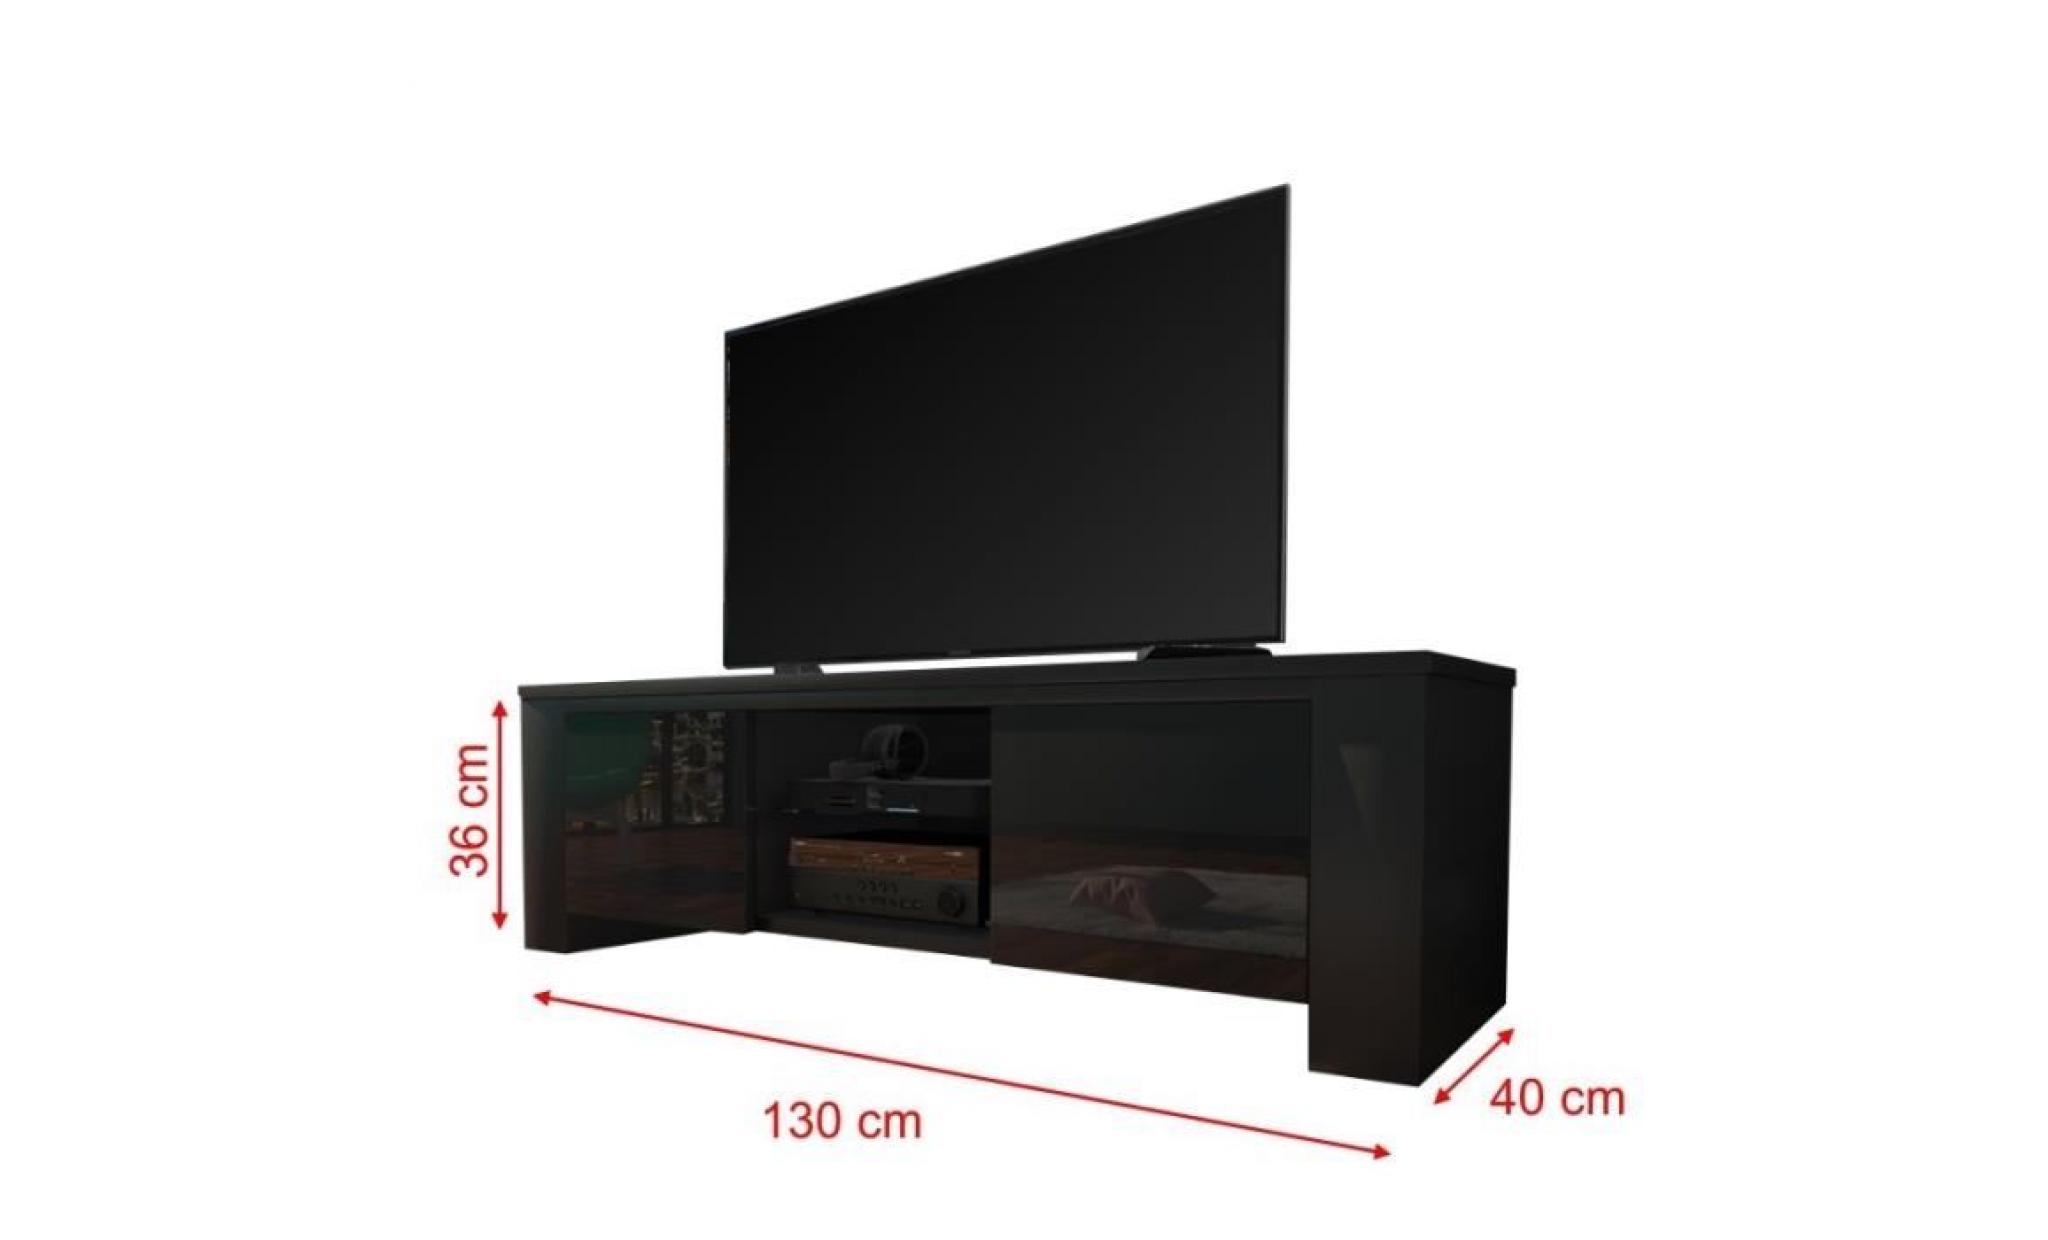 meuble tv / meuble salon   jackson   130 cm   noir mat / noir brillant   avec led   style moderne   tablette en verre pas cher